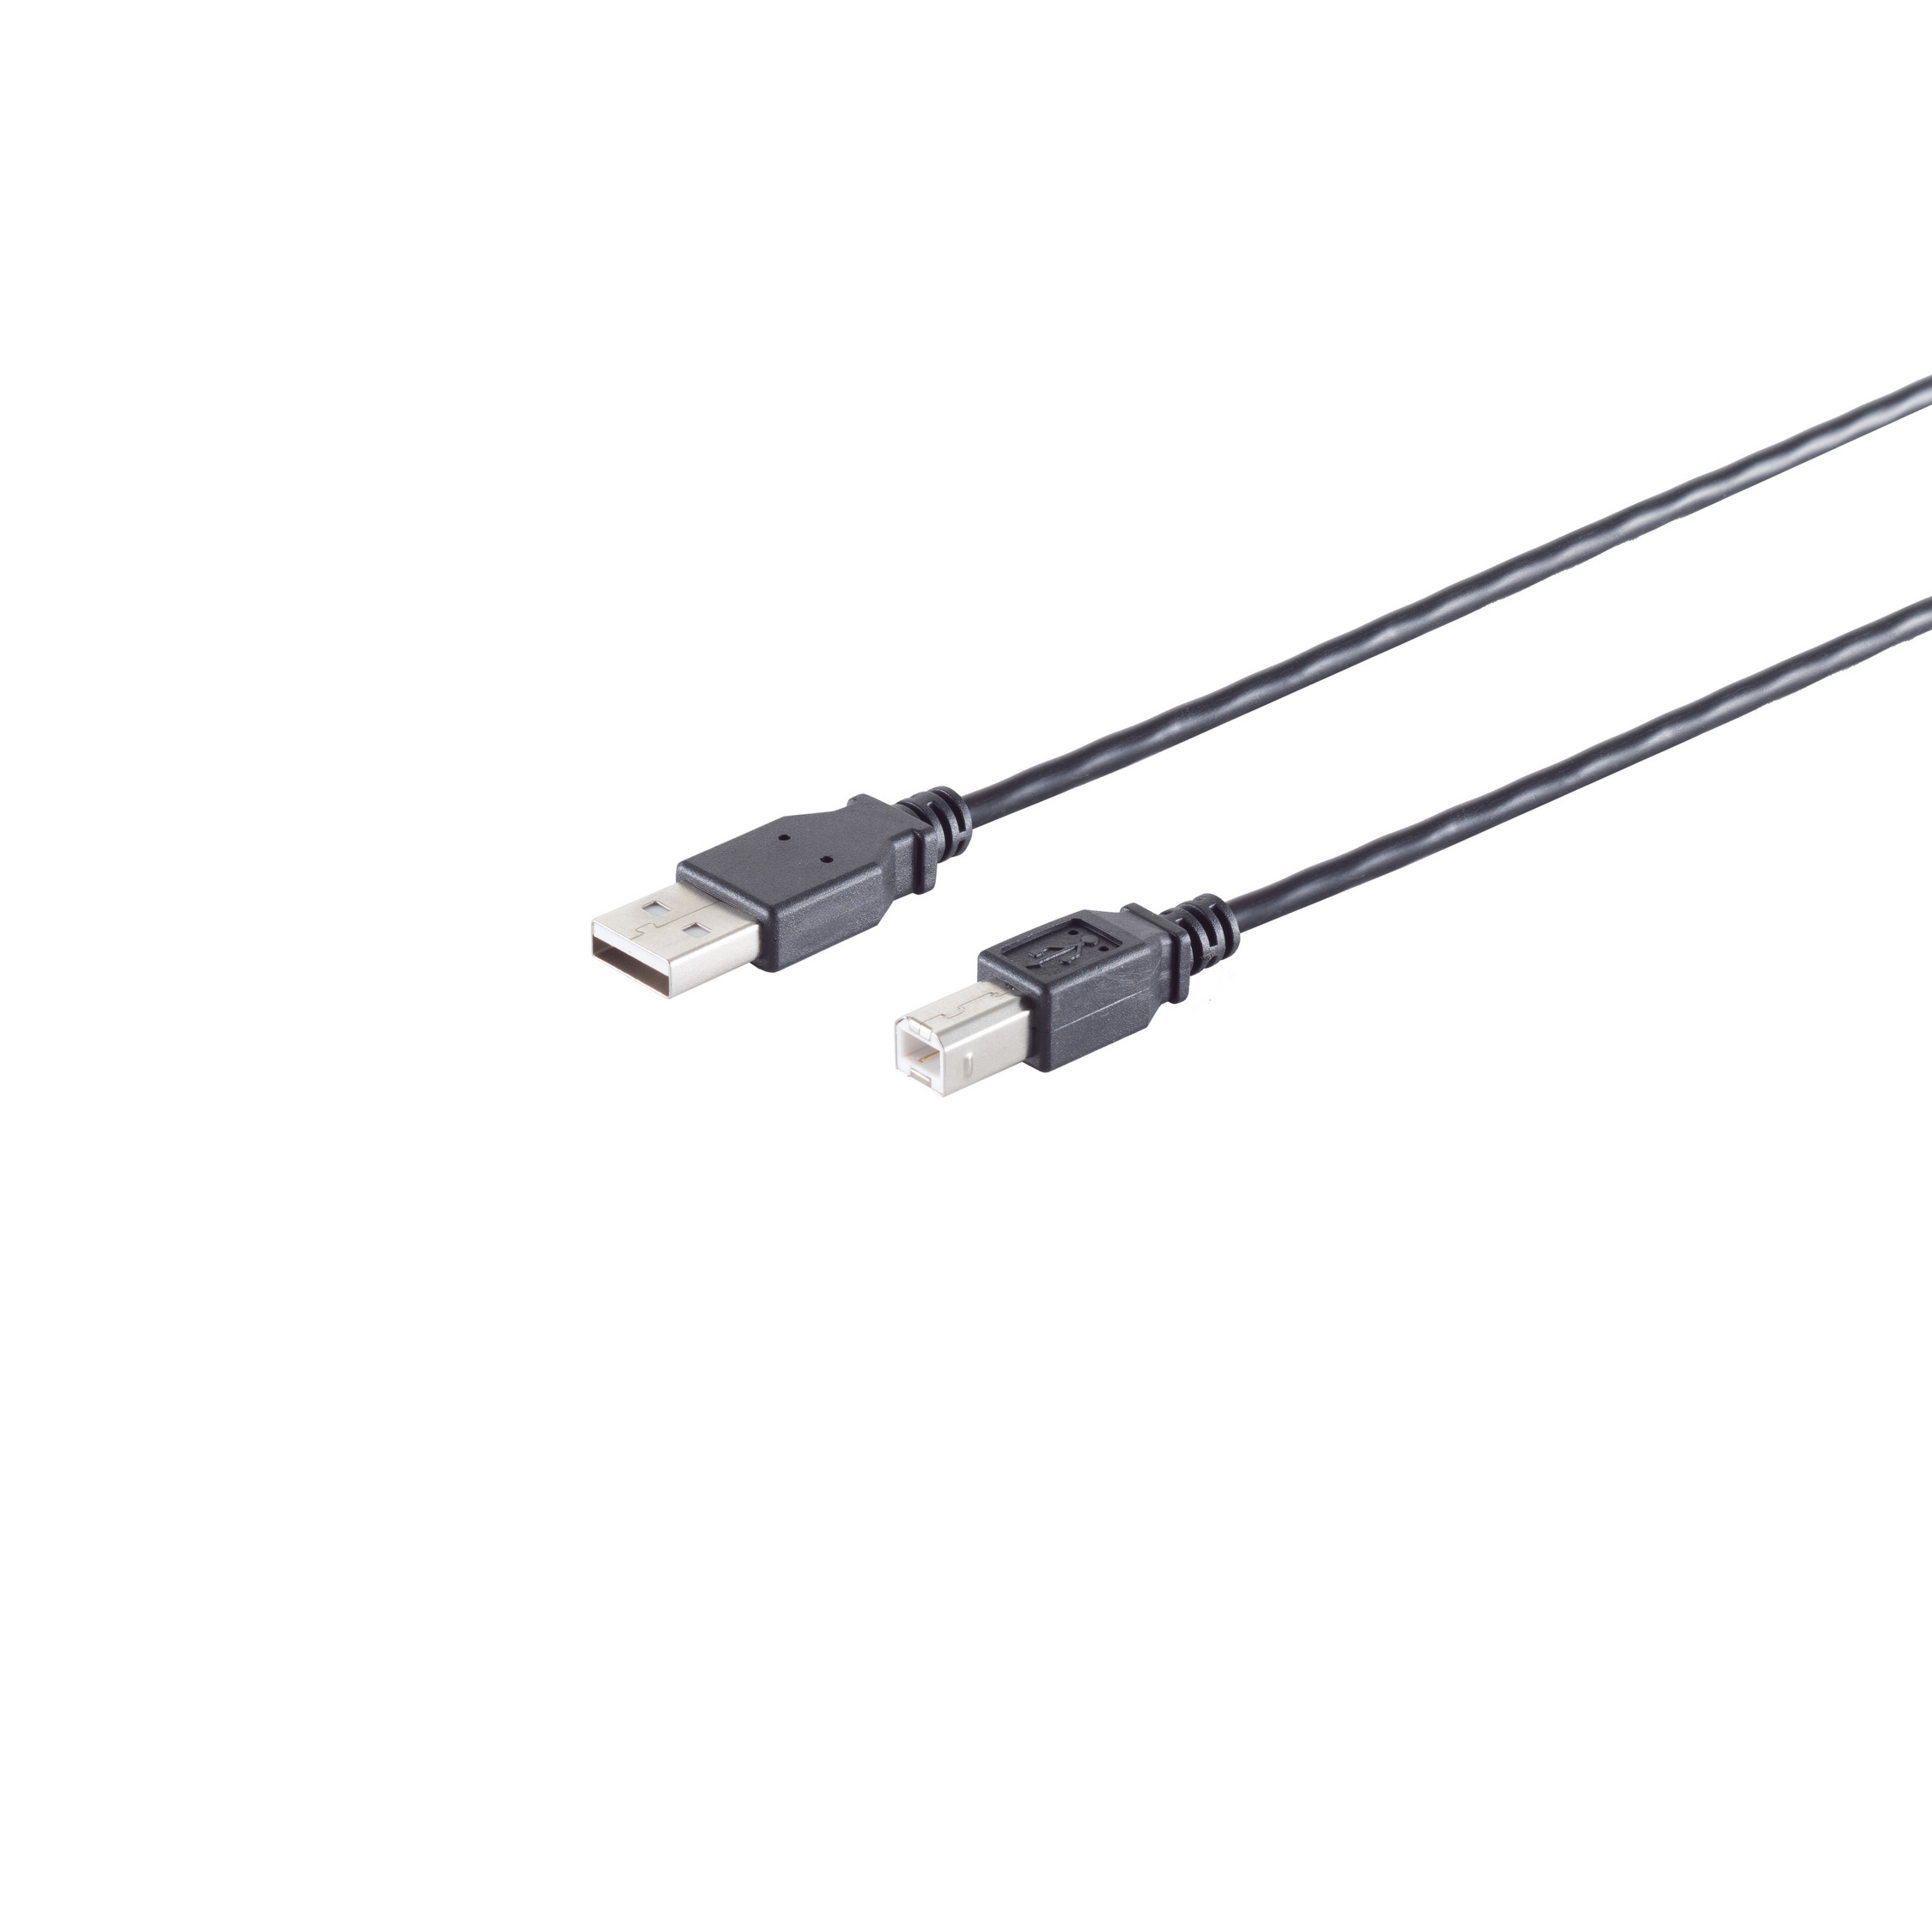 USB 2.0, 0,25m S/CONN MAXIMUM schwarz, USB-A Adapterkabel, CONNECTIVITY USB-B, Kabel